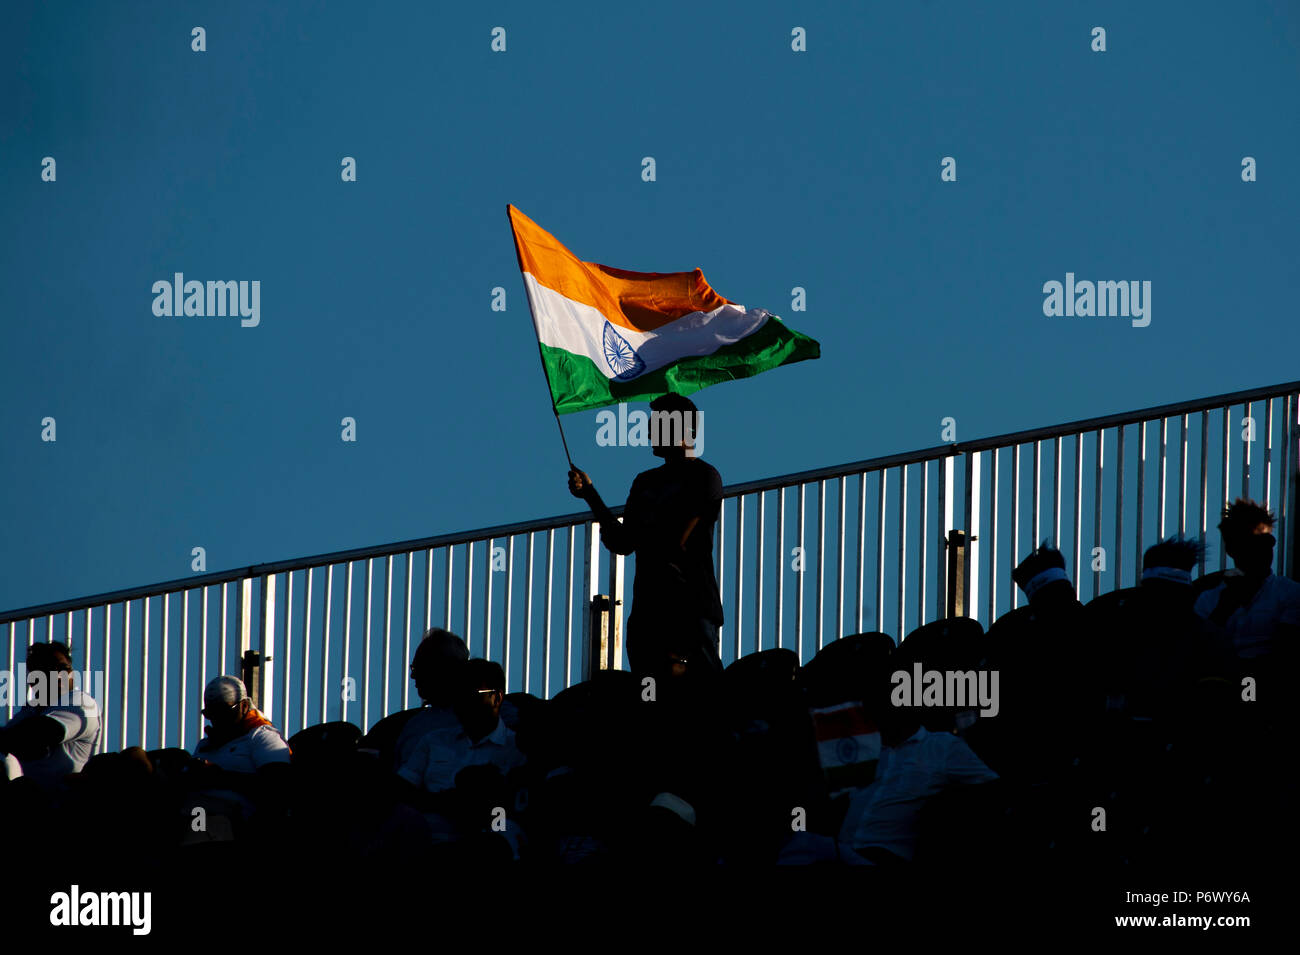 Manchester, Großbritannien. 3. Juli 2018. Eine indische Ventilator in den Krähen während der 1. Internationalen T20 Match zwischen England und Indien im Old Trafford, Manchester, England am 3. Juli 2018. Foto von Brandon Griffiths. Credit: Brandon Griffiths/Alamy leben Nachrichten Stockfoto